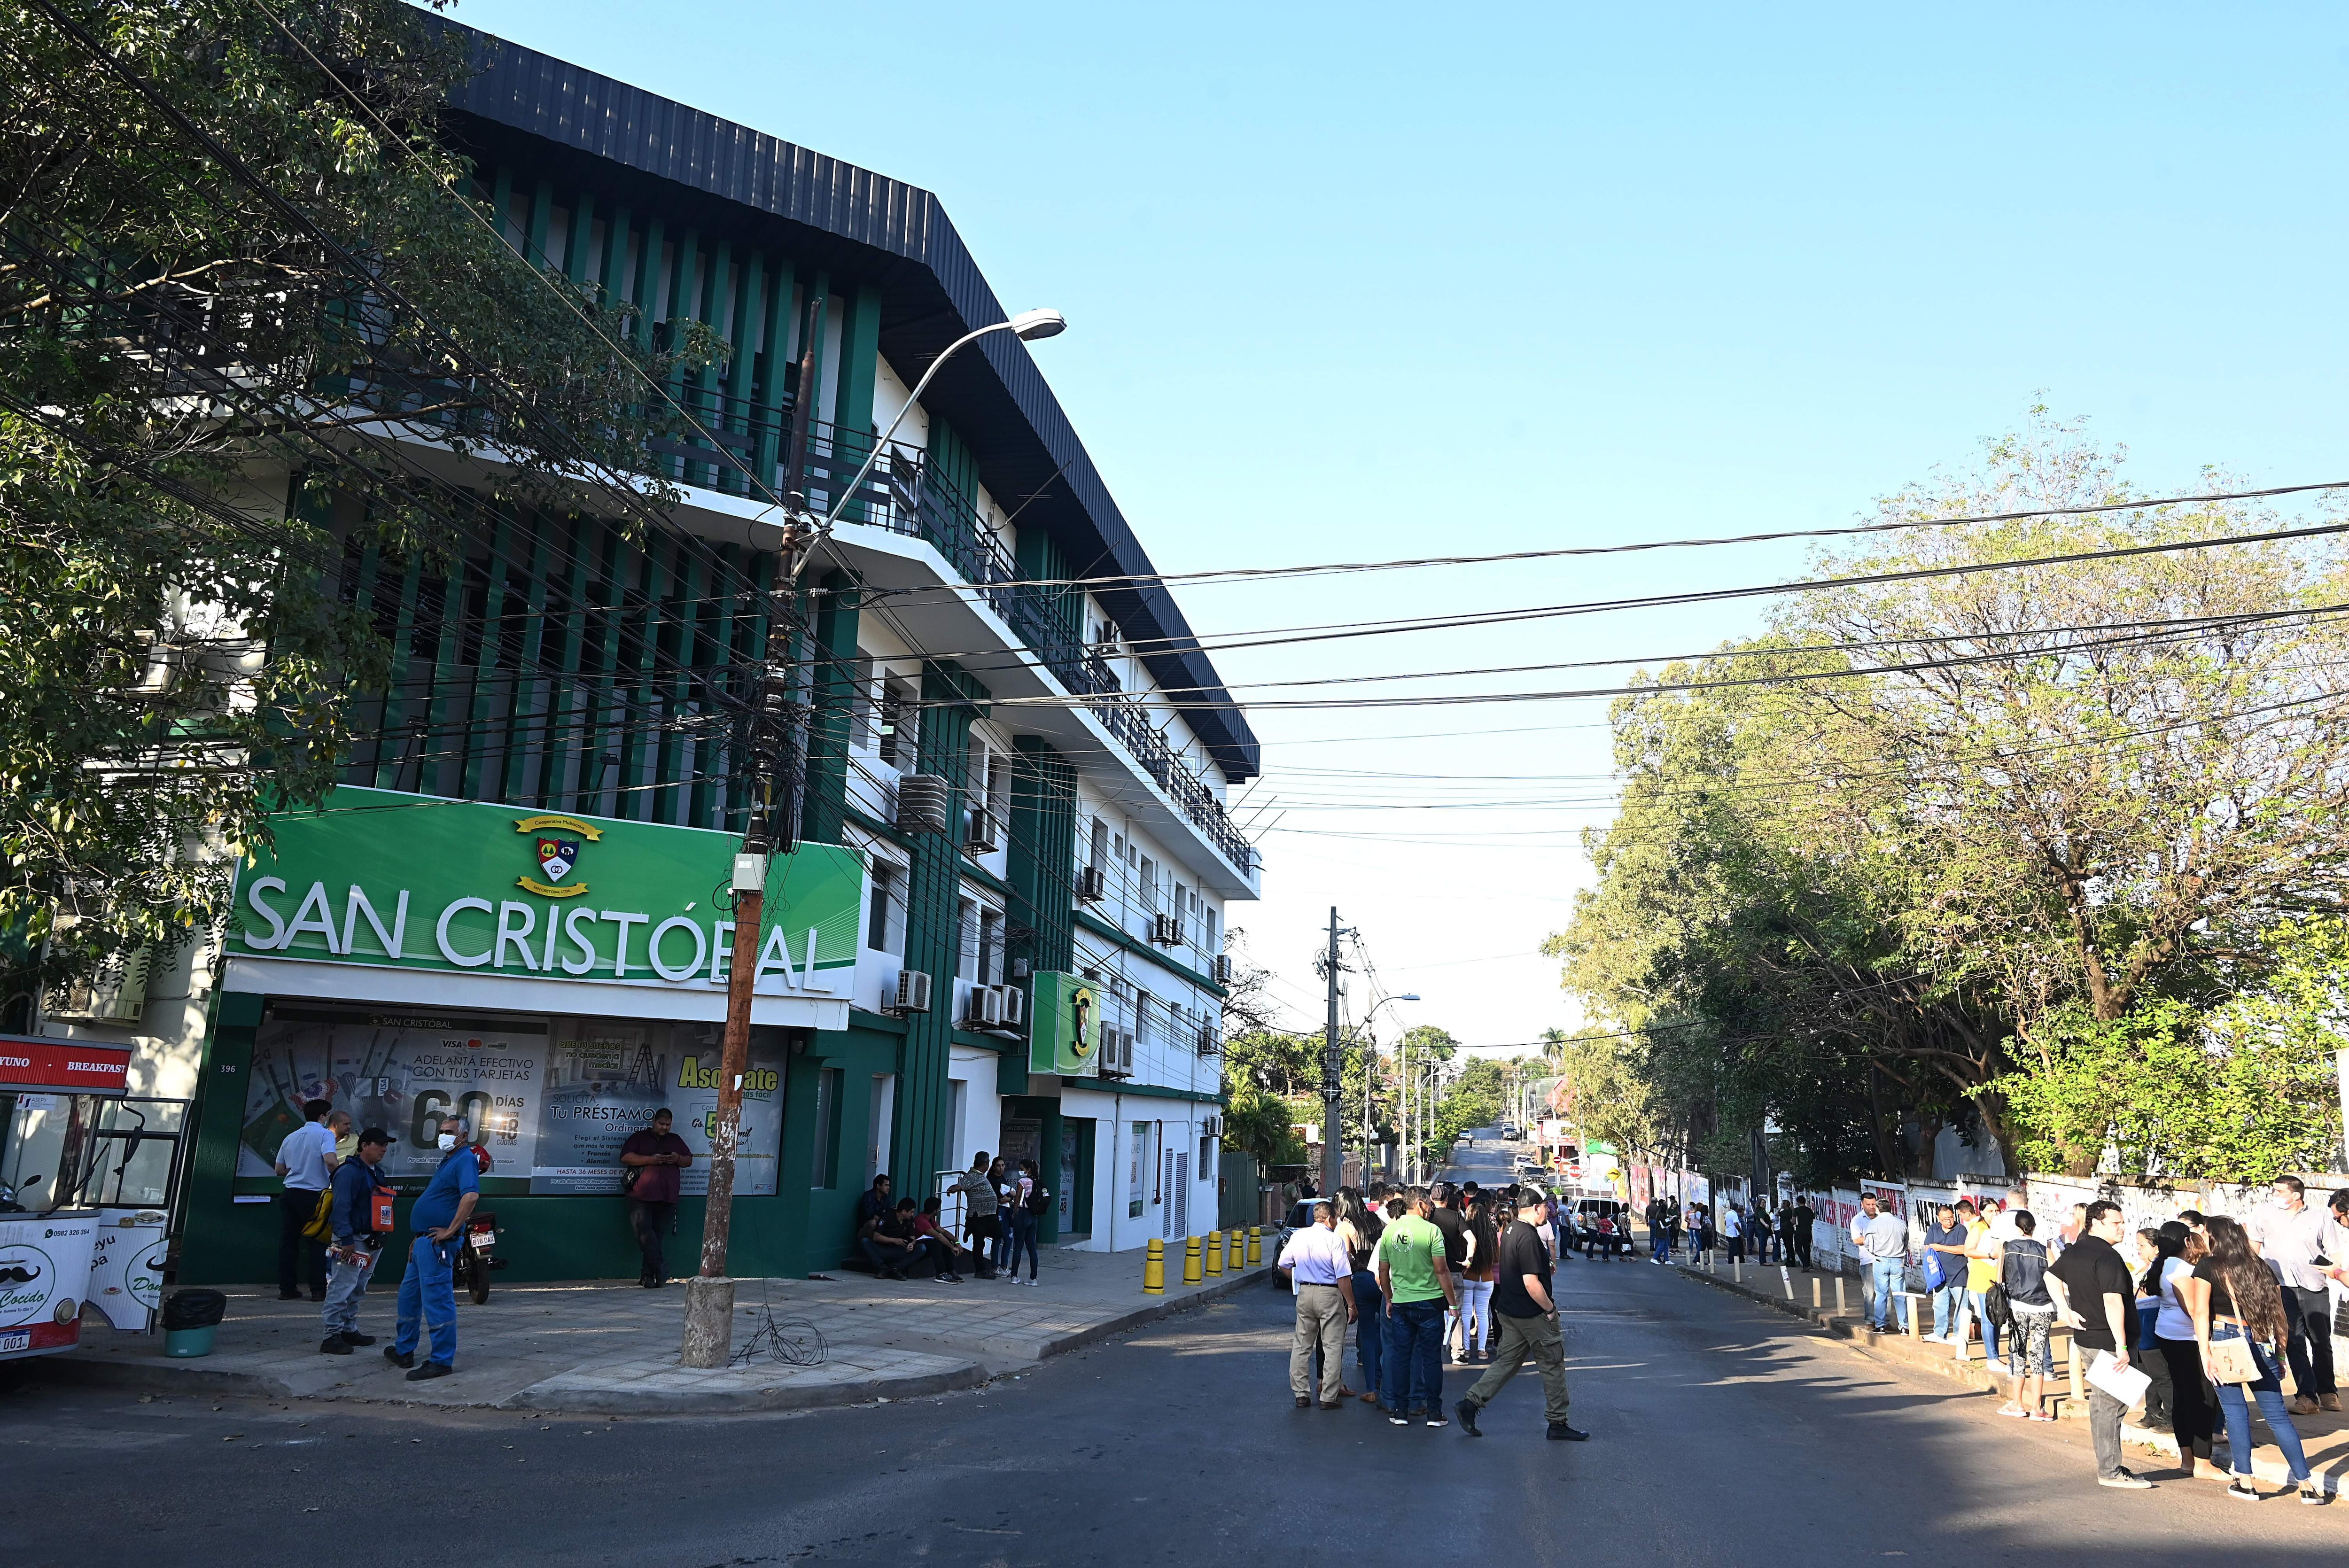 Lo ocurrido en San Cristóbal es una señal de alerta “luz roja” que requiere de acción inmediata